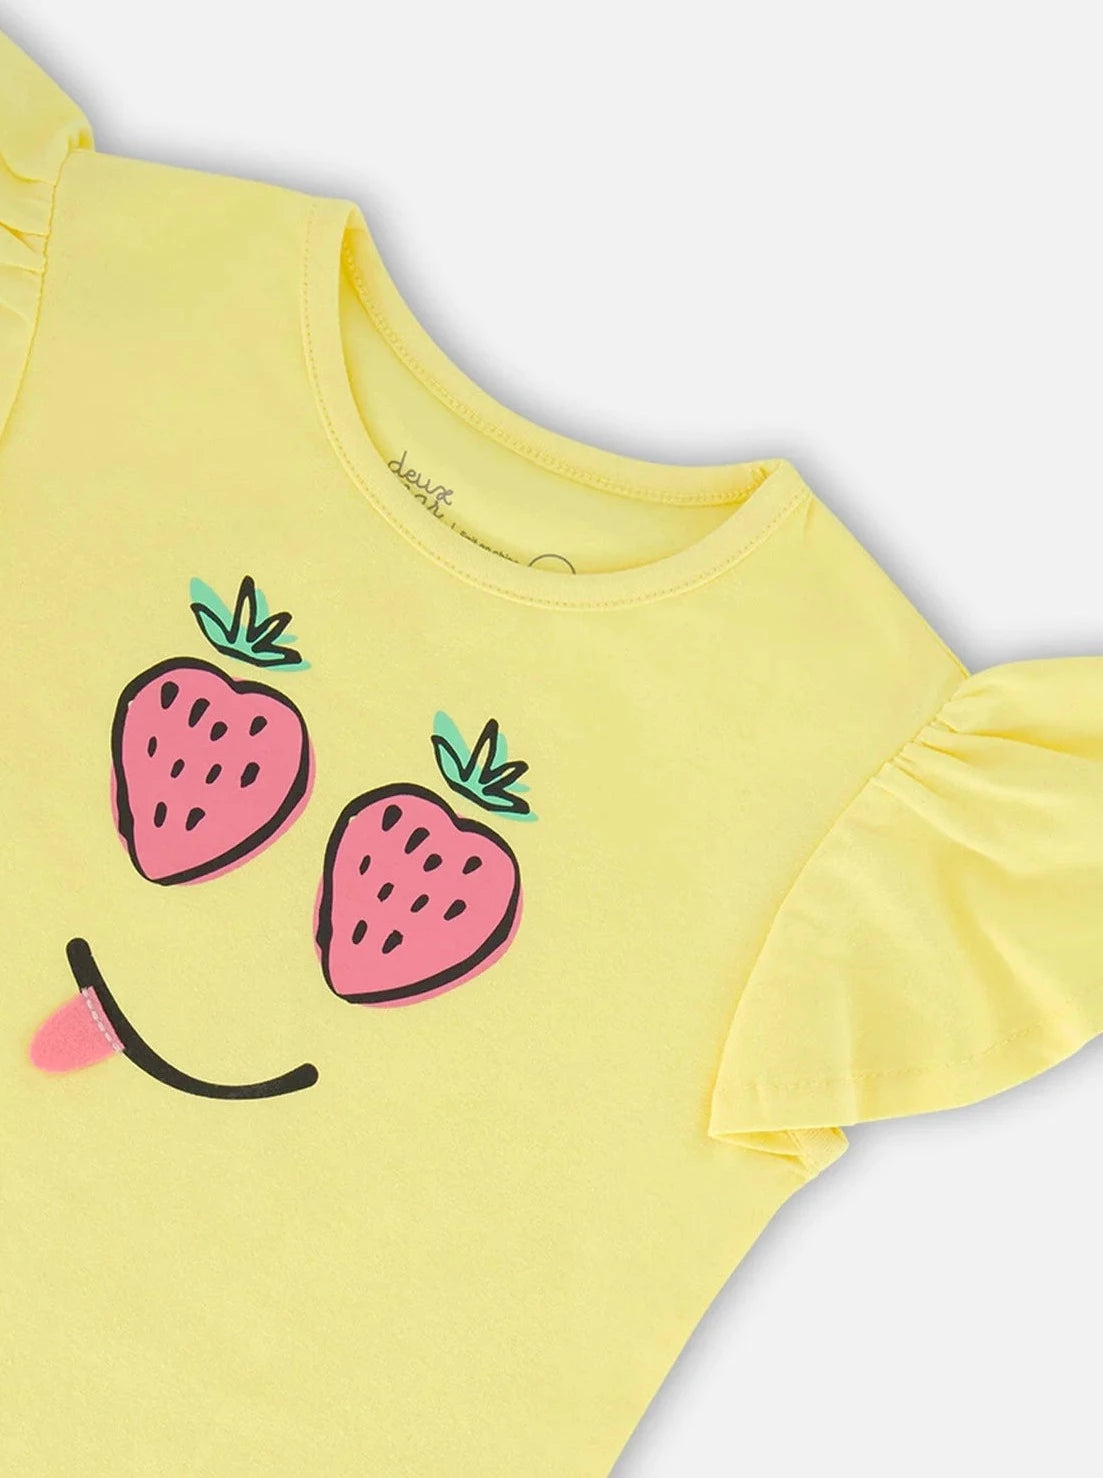 Deux Par Deux Baby Yellow Printed Organic Cotton T-Shirt_ F30E71-222A